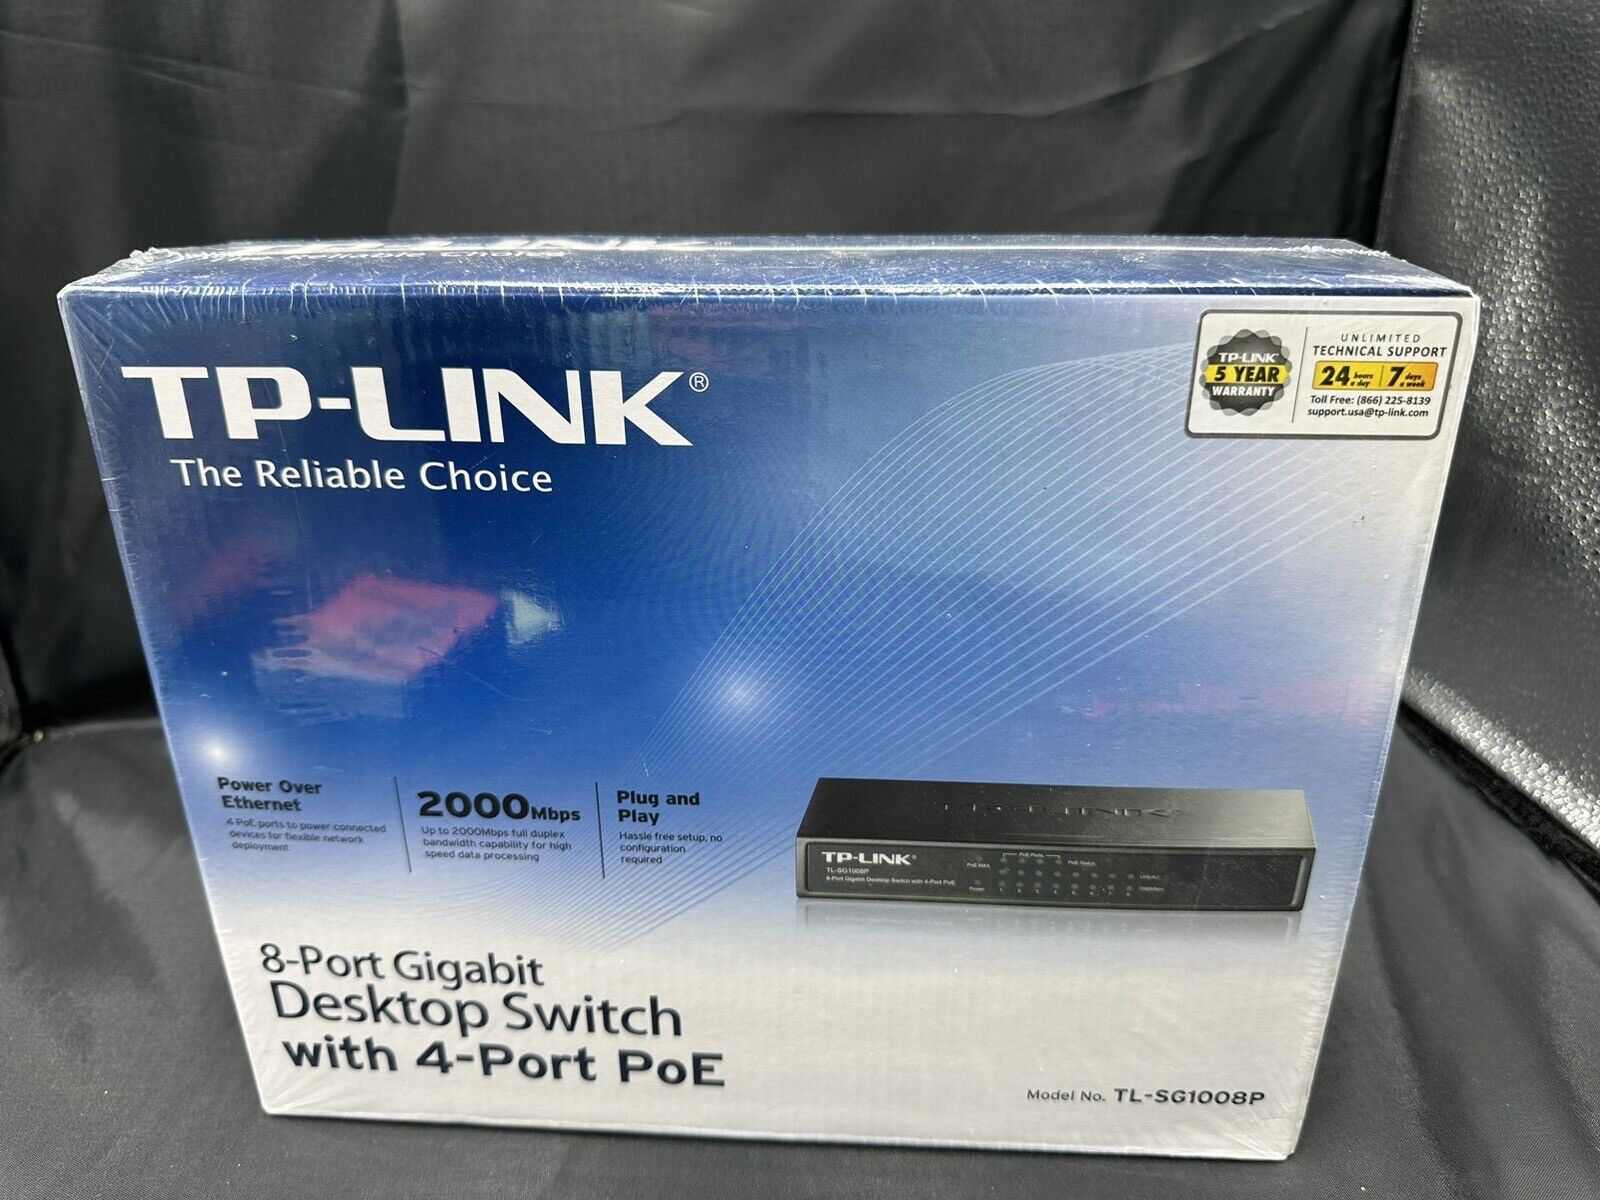 TP-LINK 8-Port Gigabit Desktop Switch With 4-Port PoE 2000 Mbps TL-SG1008P